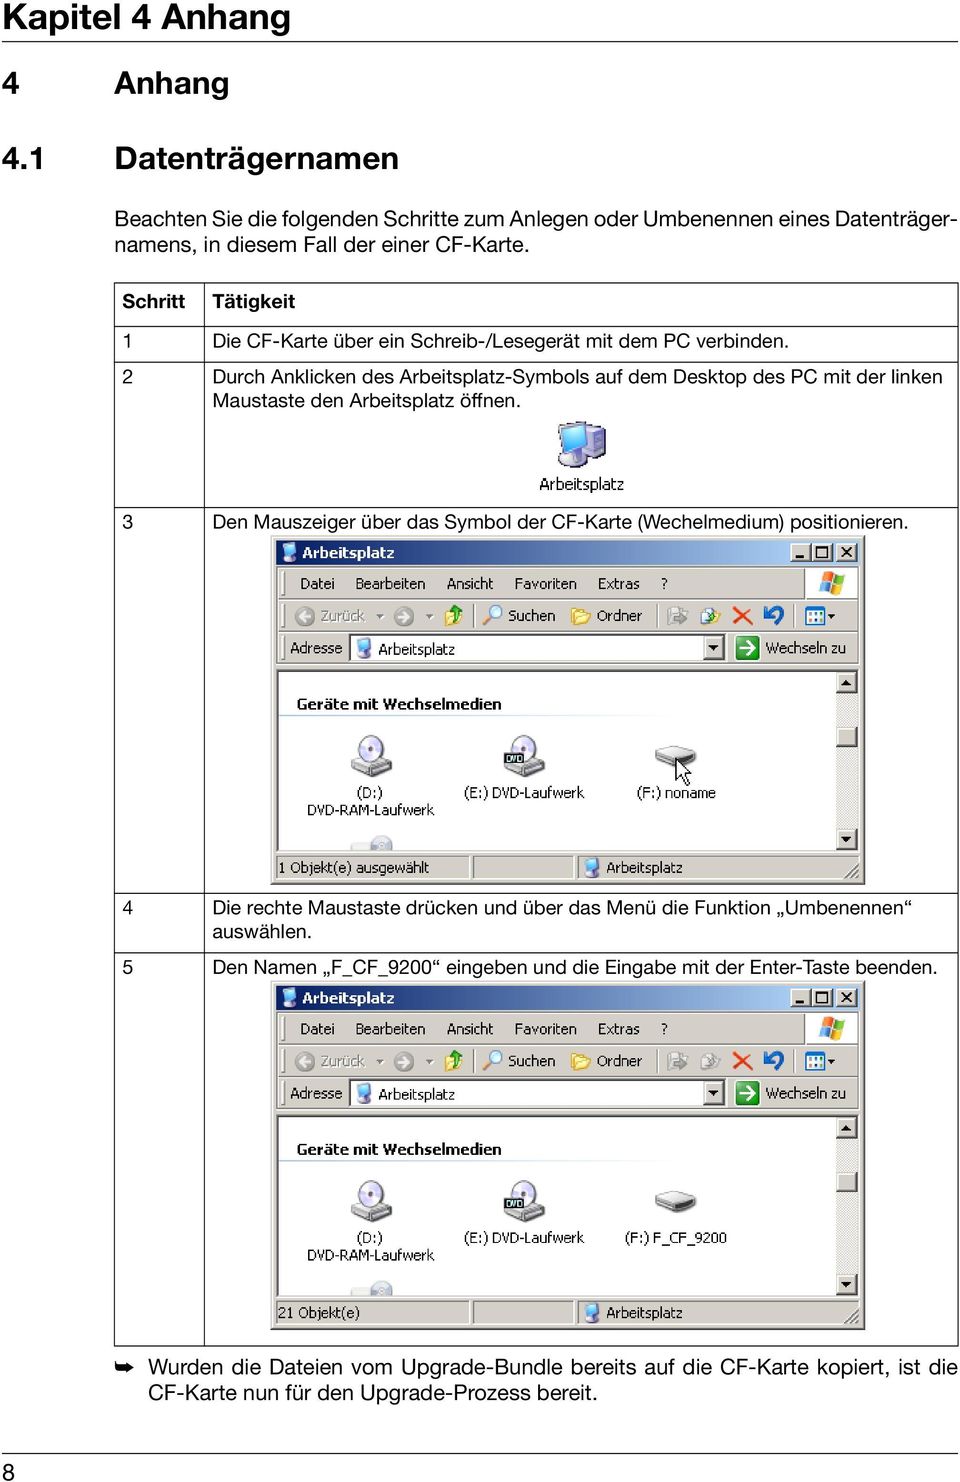 2 Durch Anklicken des Arbeitsplatz-Symbols auf dem Desktop des PC mit der linken Maustaste den Arbeitsplatz öffnen.